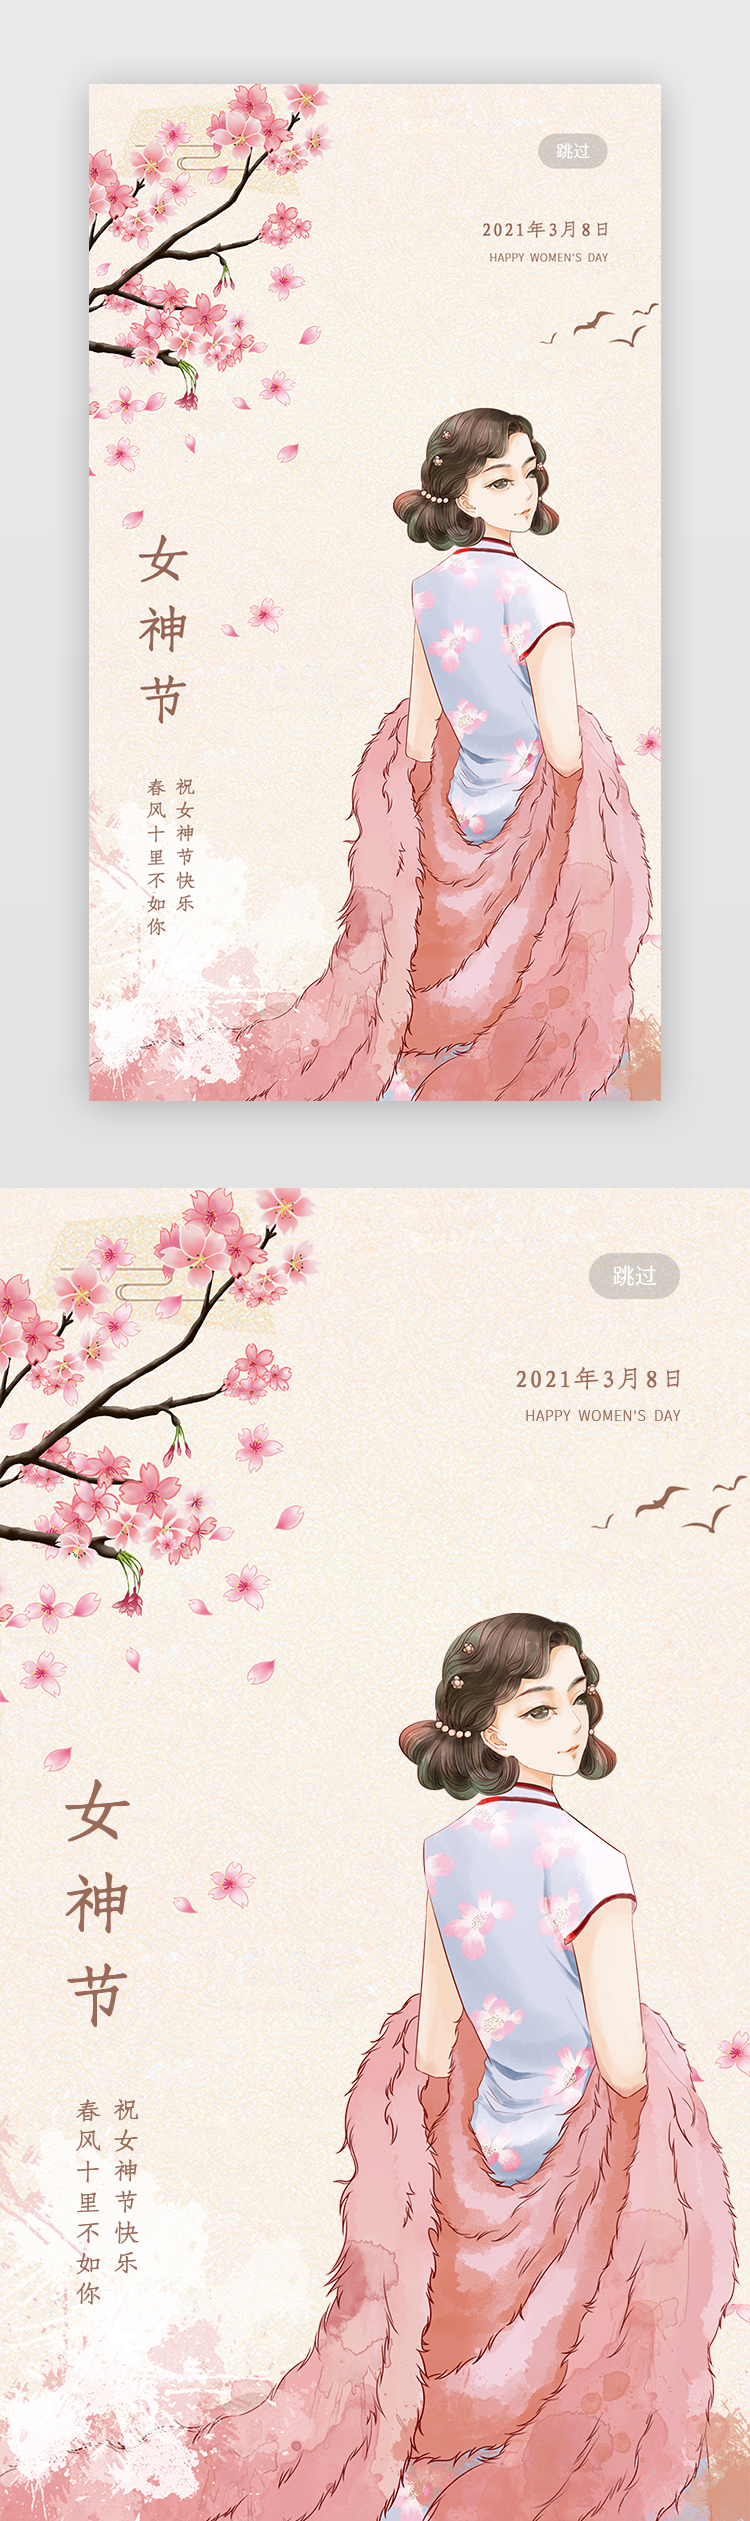 妇女节闪屏中国风粉色旗袍女孩图片